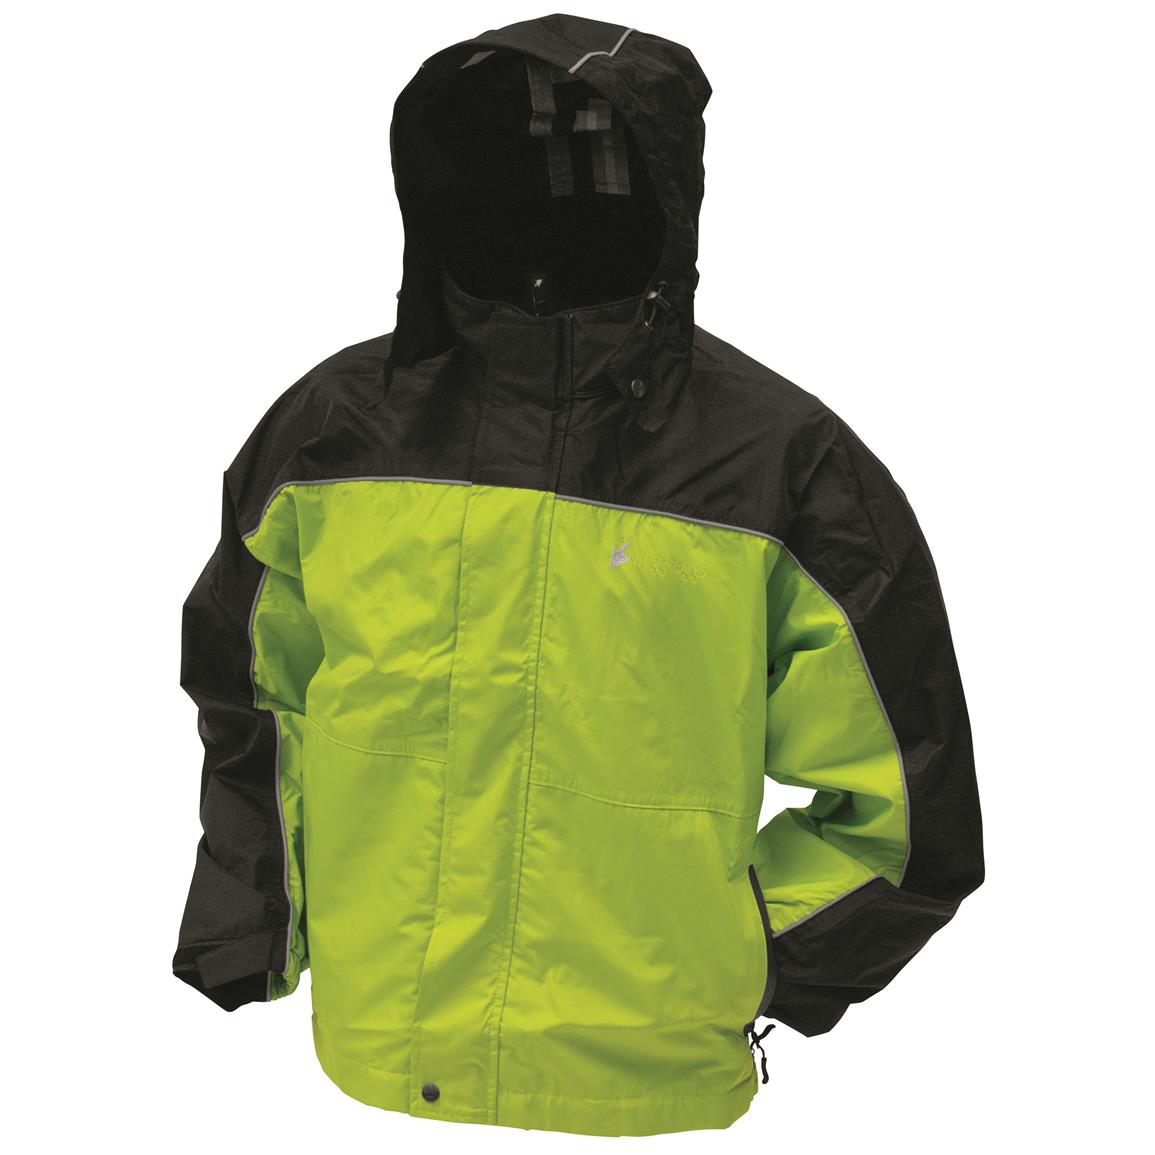 frogg toggs Men's Waterproof Highway Toadz Reflective Jacket, Hi-Vis Green/Black